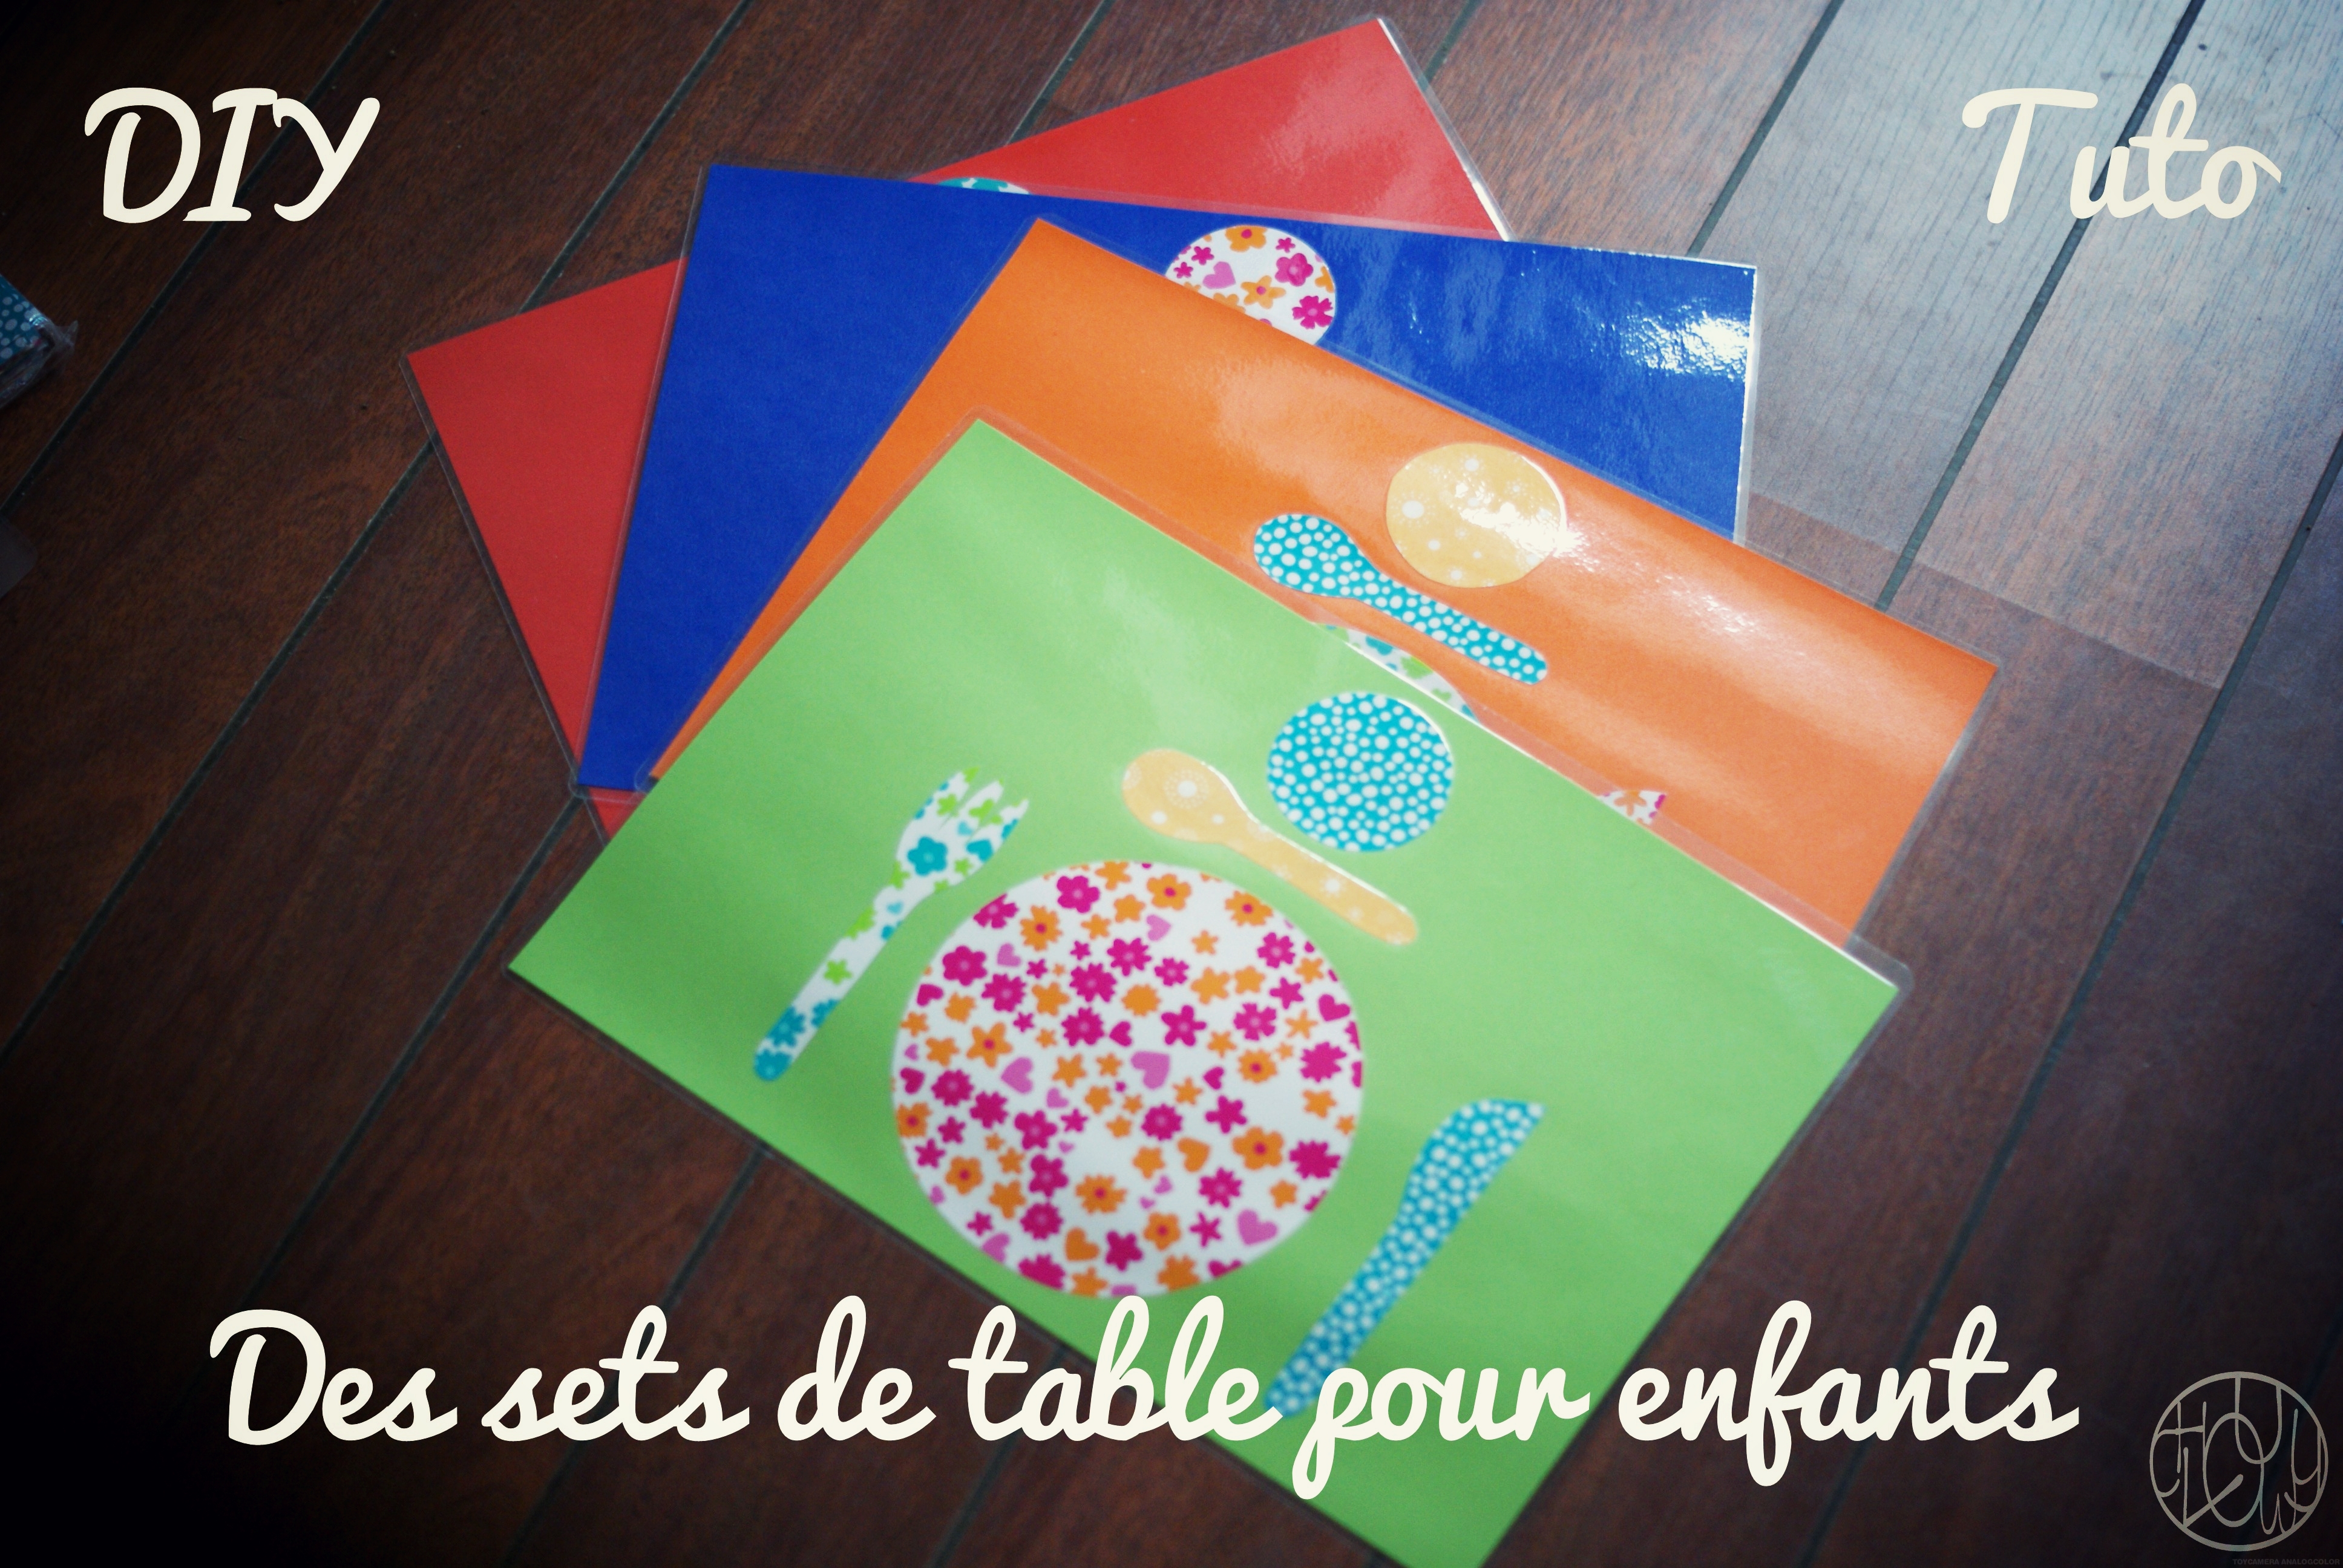 DIY Tutoriel : Des sets de table Montessori - Dans ma petite roulotte...